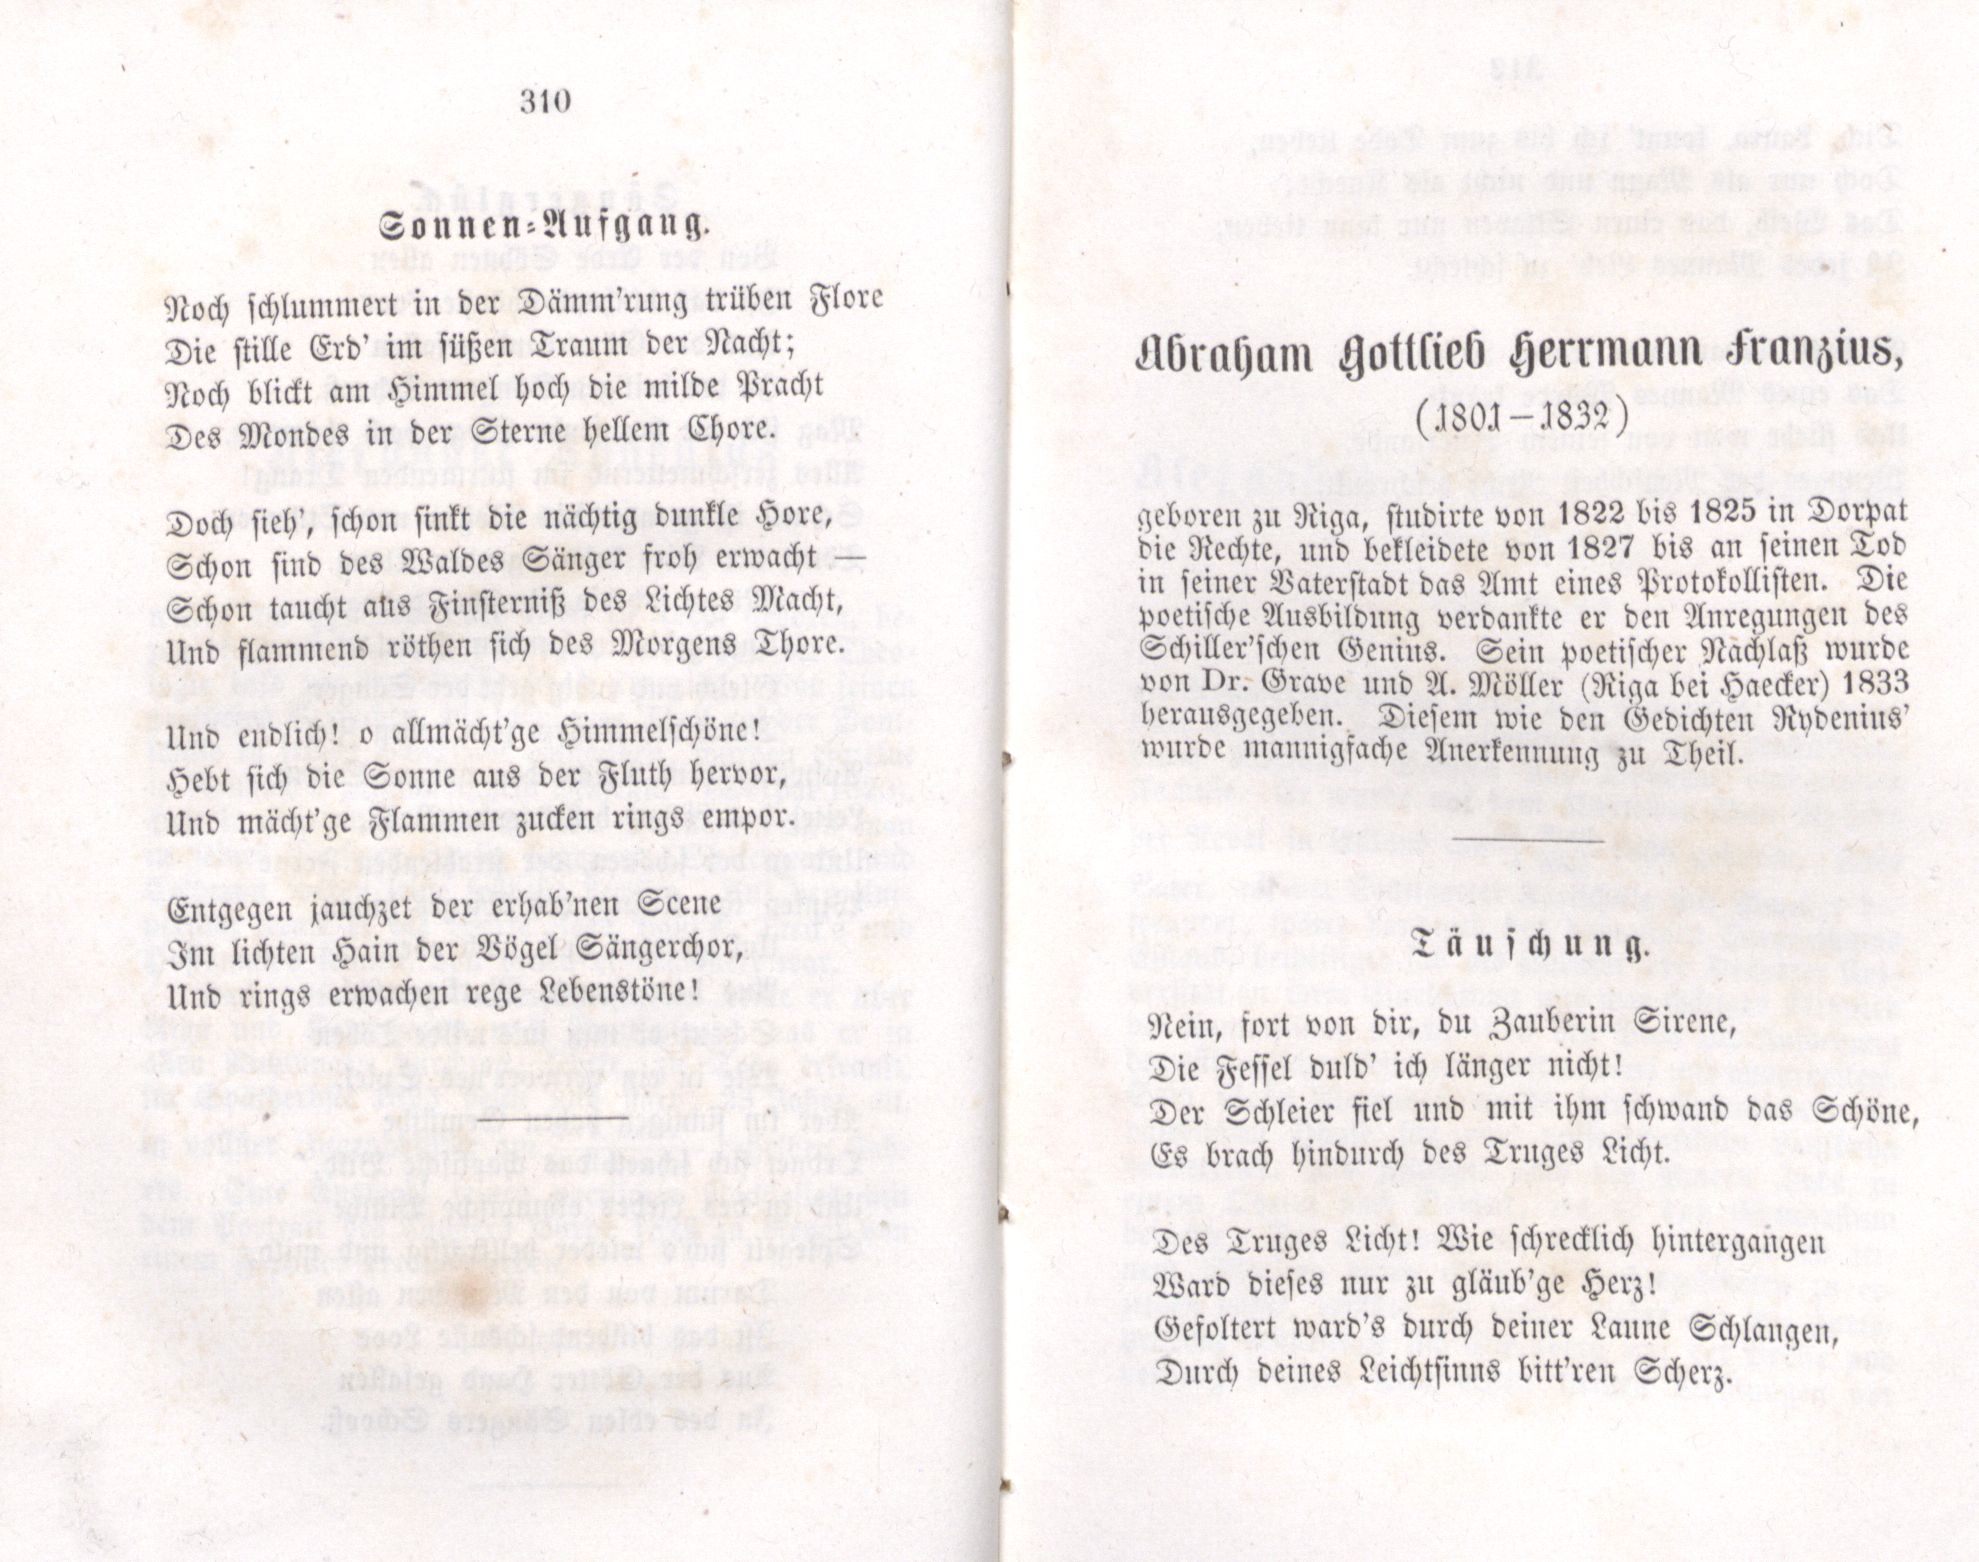 Sonnen-Aufgang (1855) | 1. (310-311) Основной текст